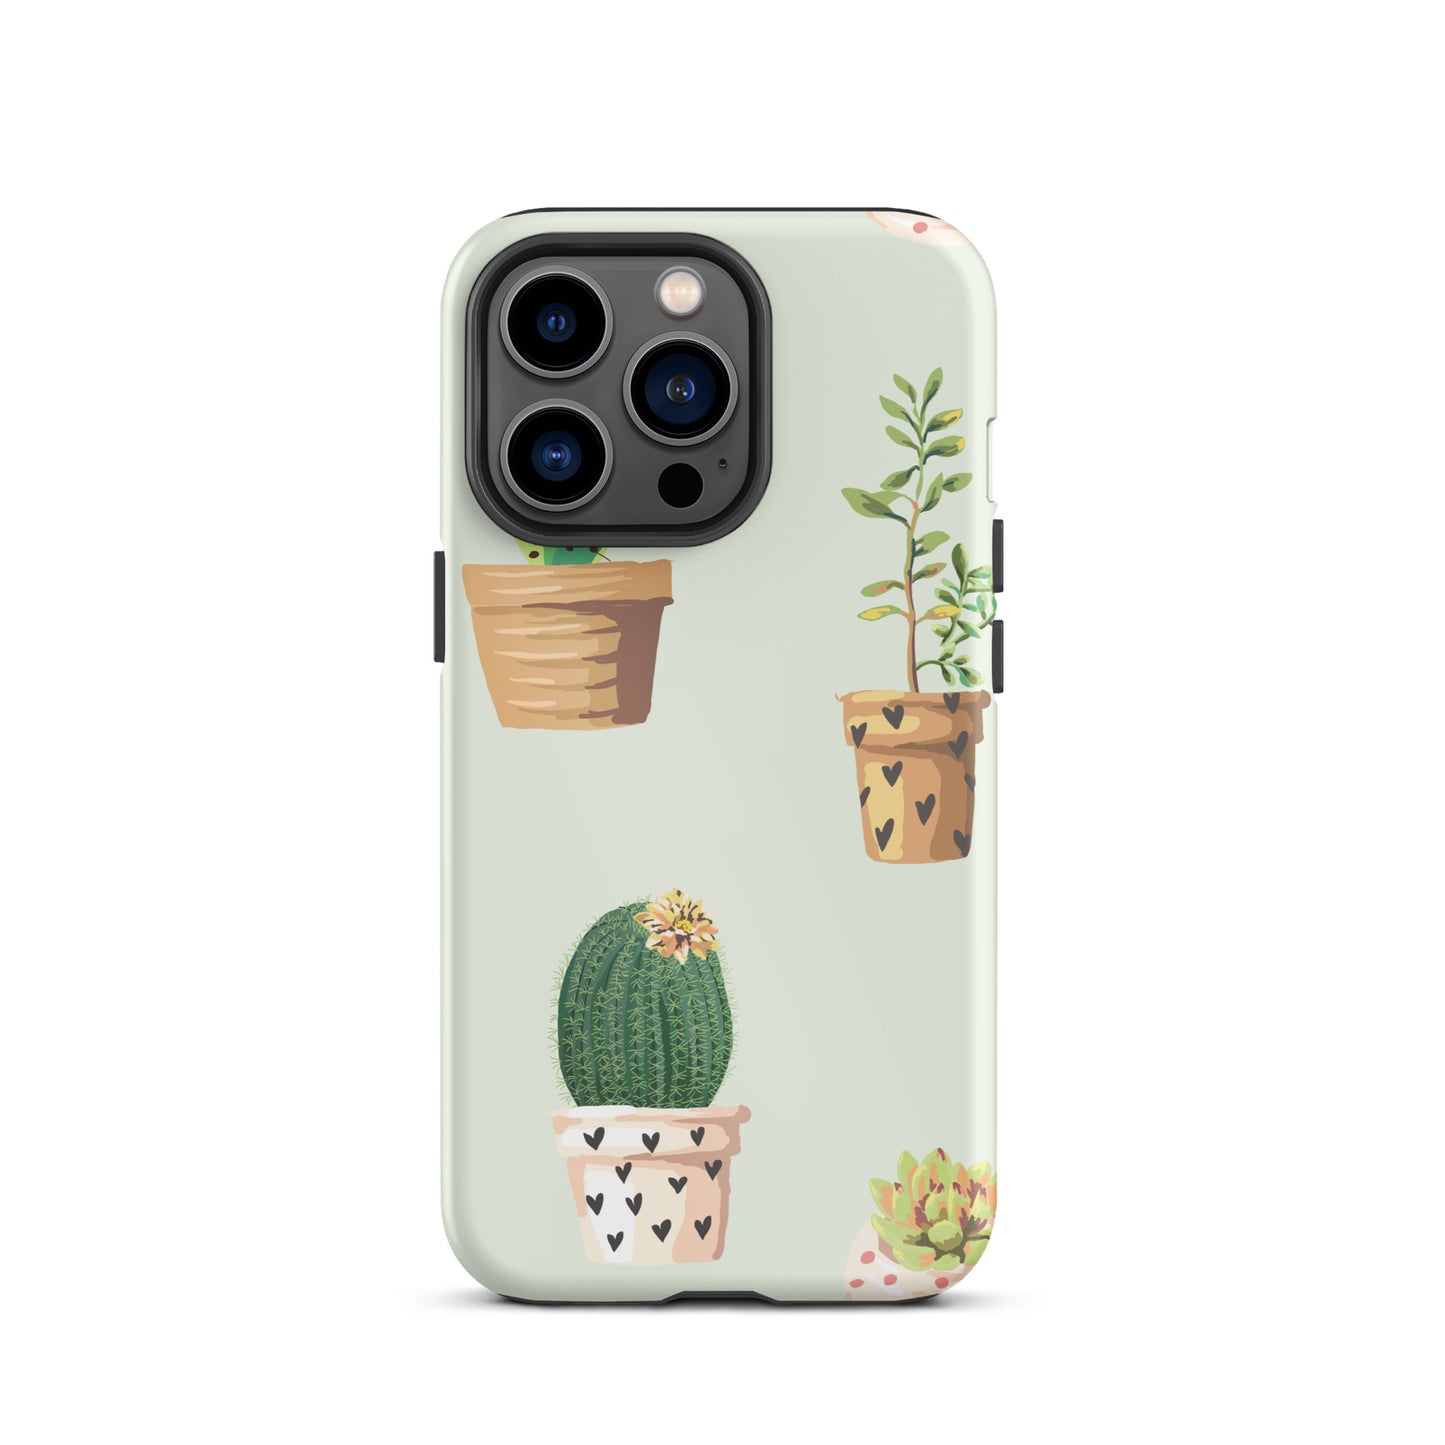 Cactus iPhone case